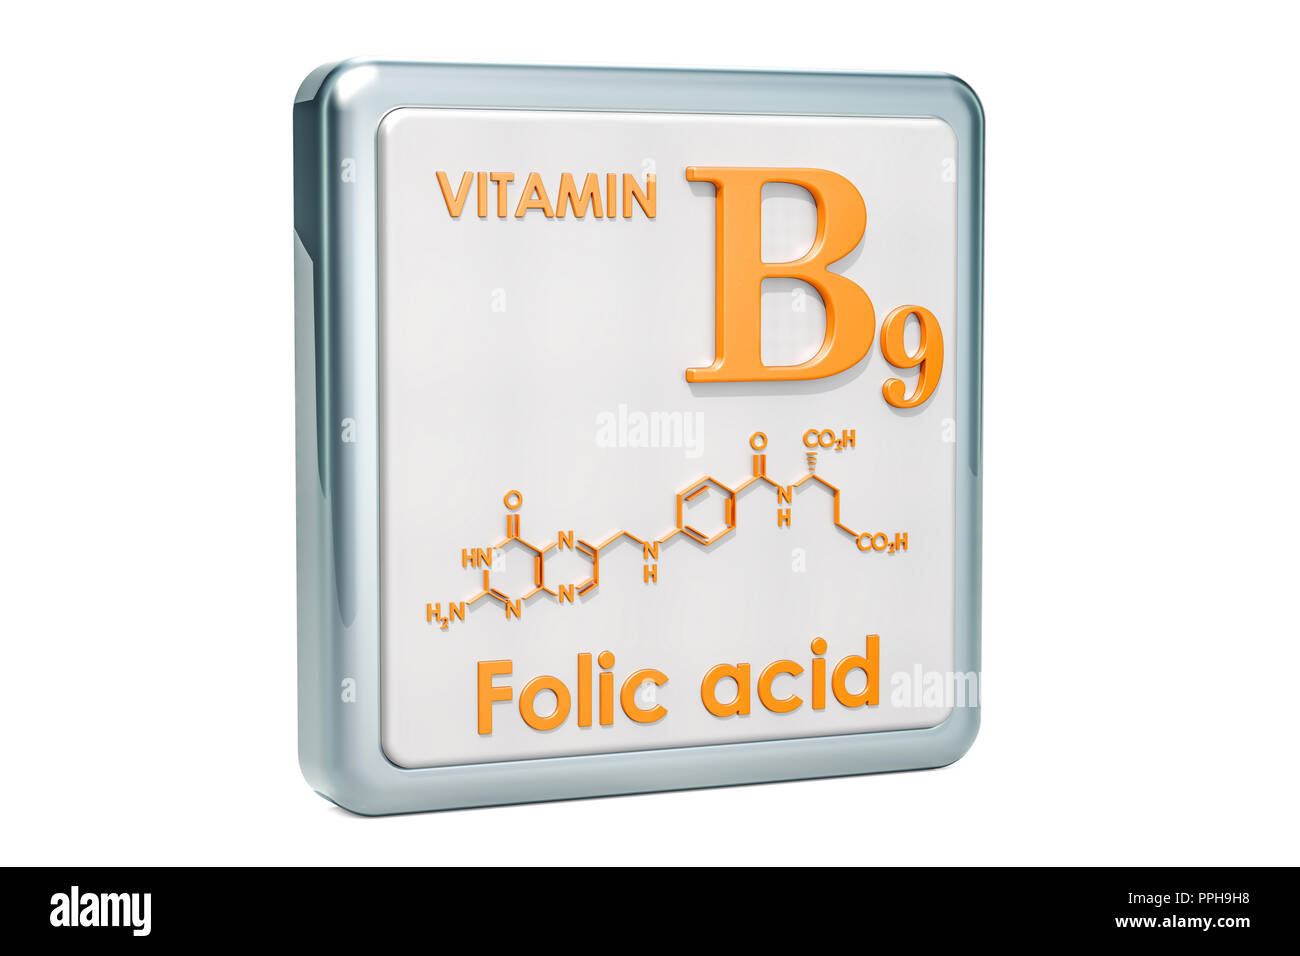 Фолиевая кислота формула. Витамин в9 химическая формула. Витамин фолиевая кислота формула. Витамин б9 формула. Витамин b9.